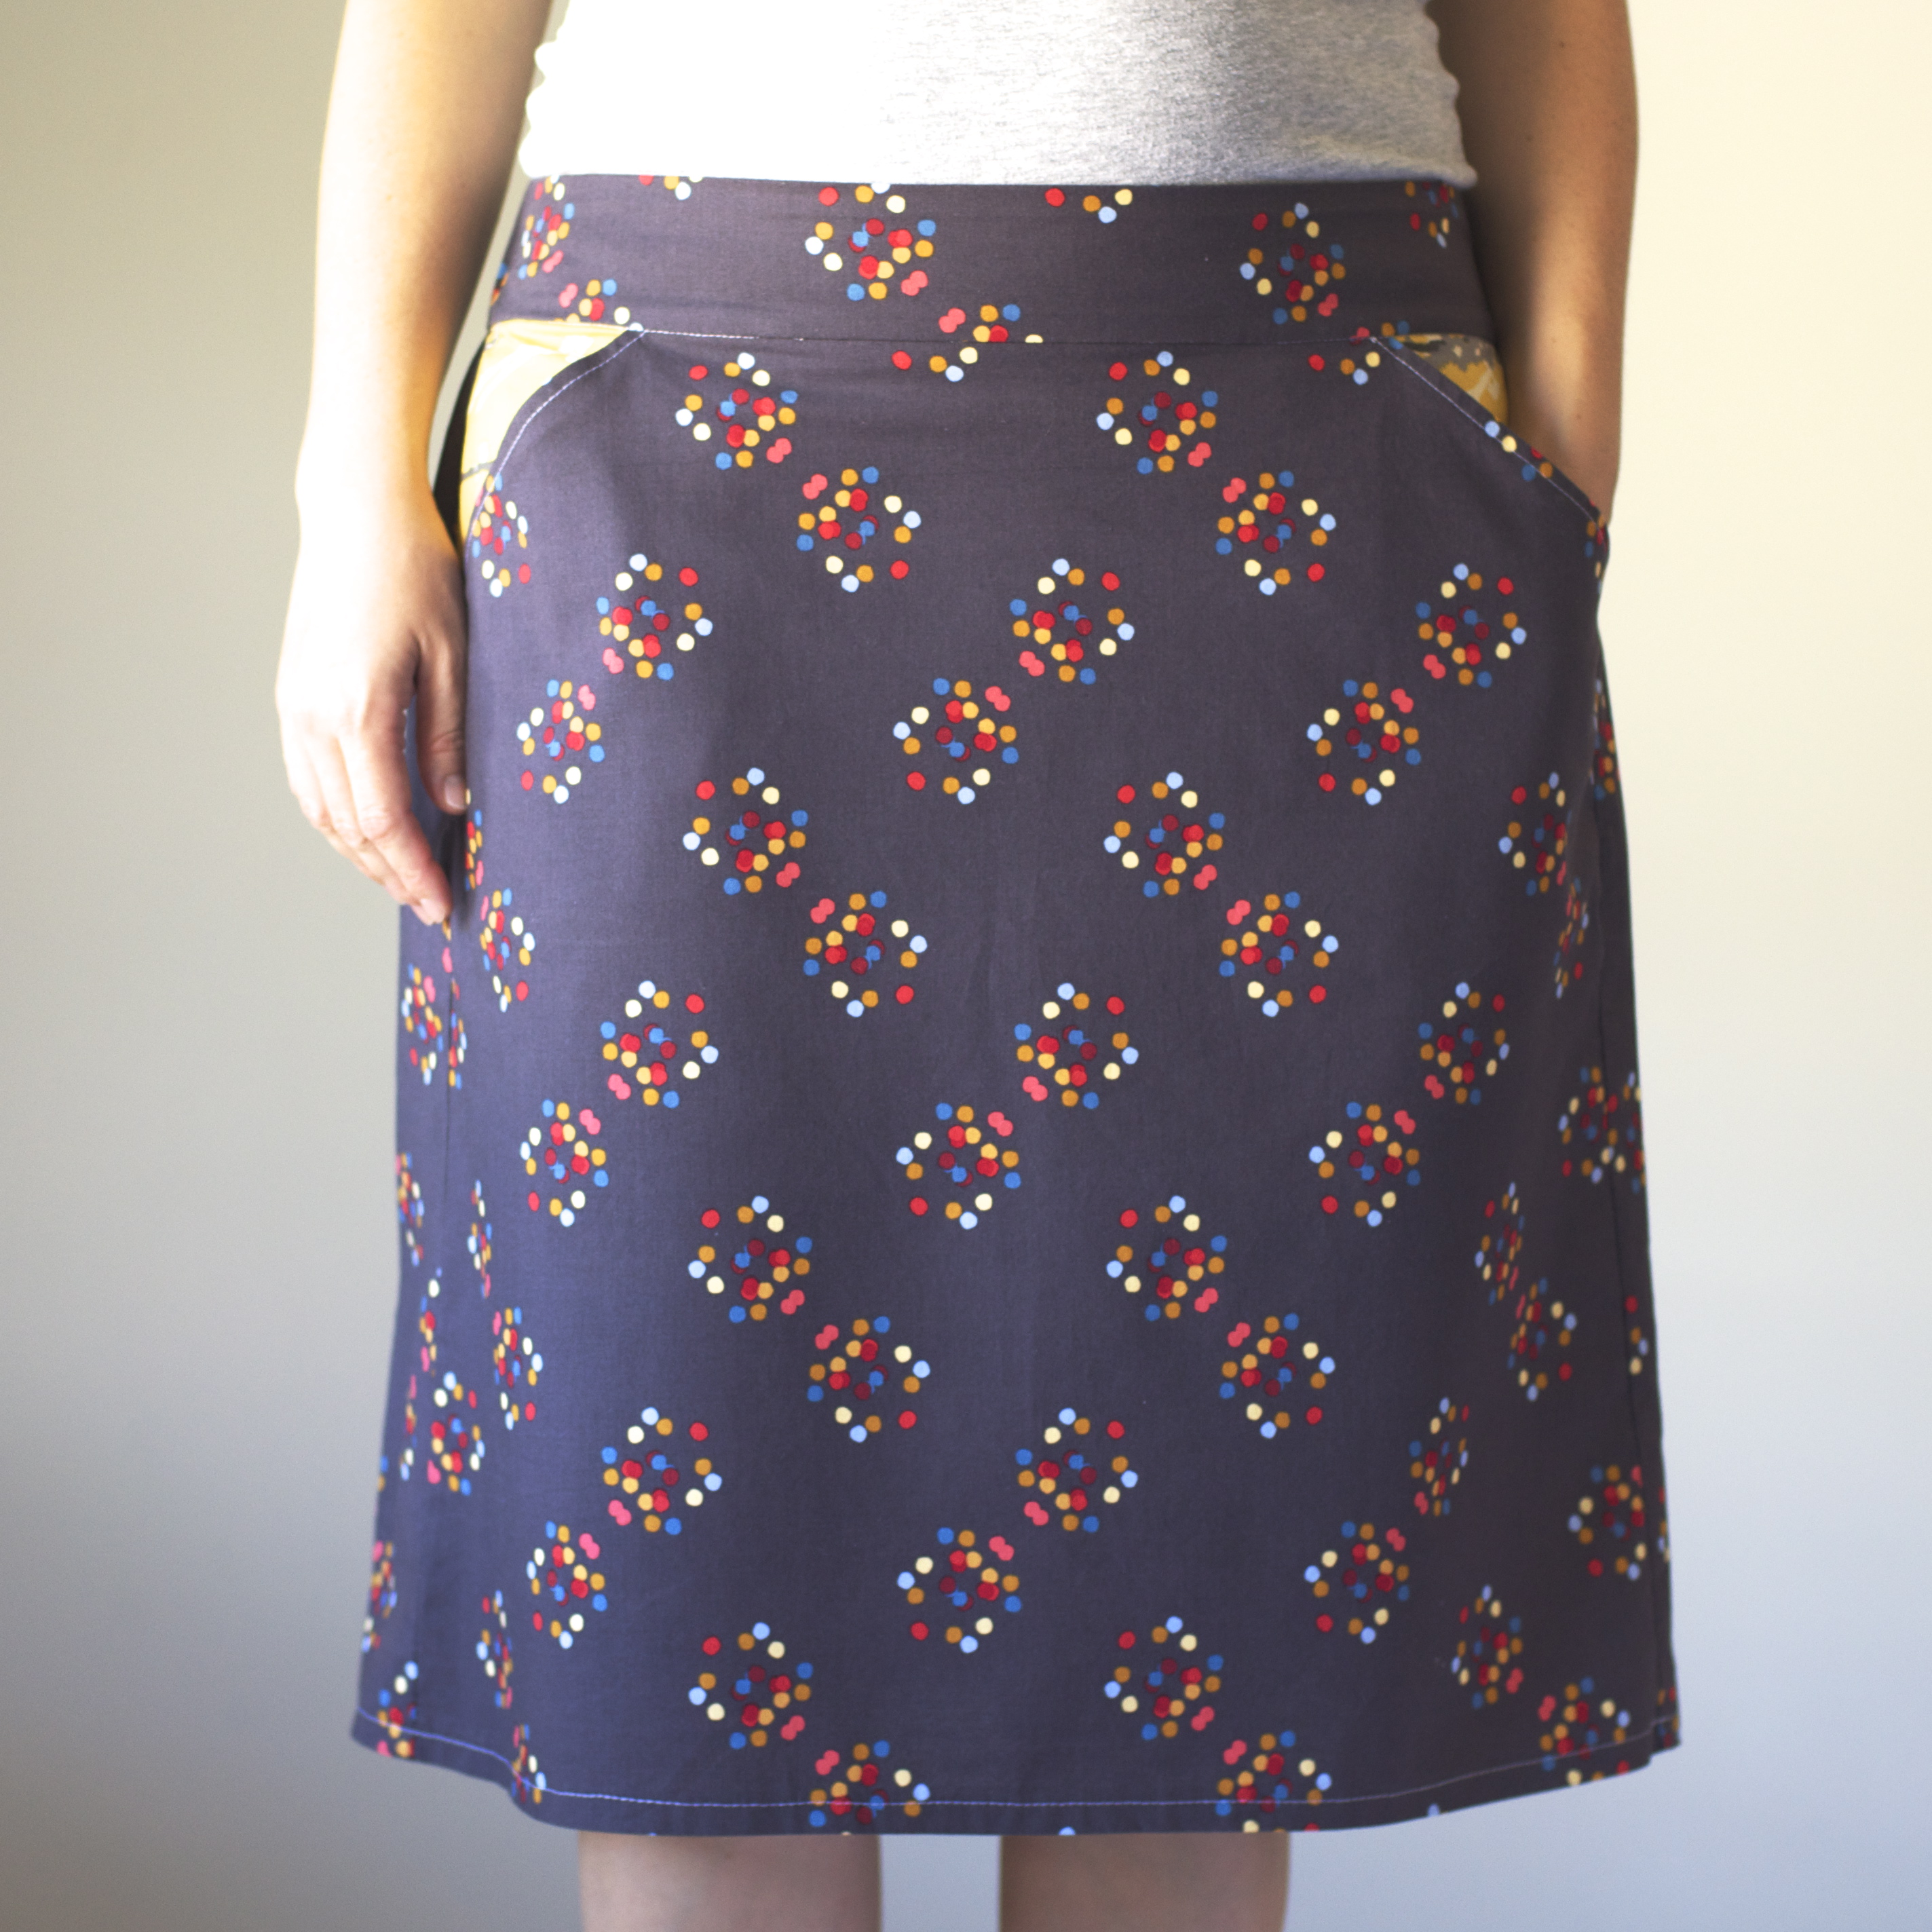 Skirt Patterns For Women 78